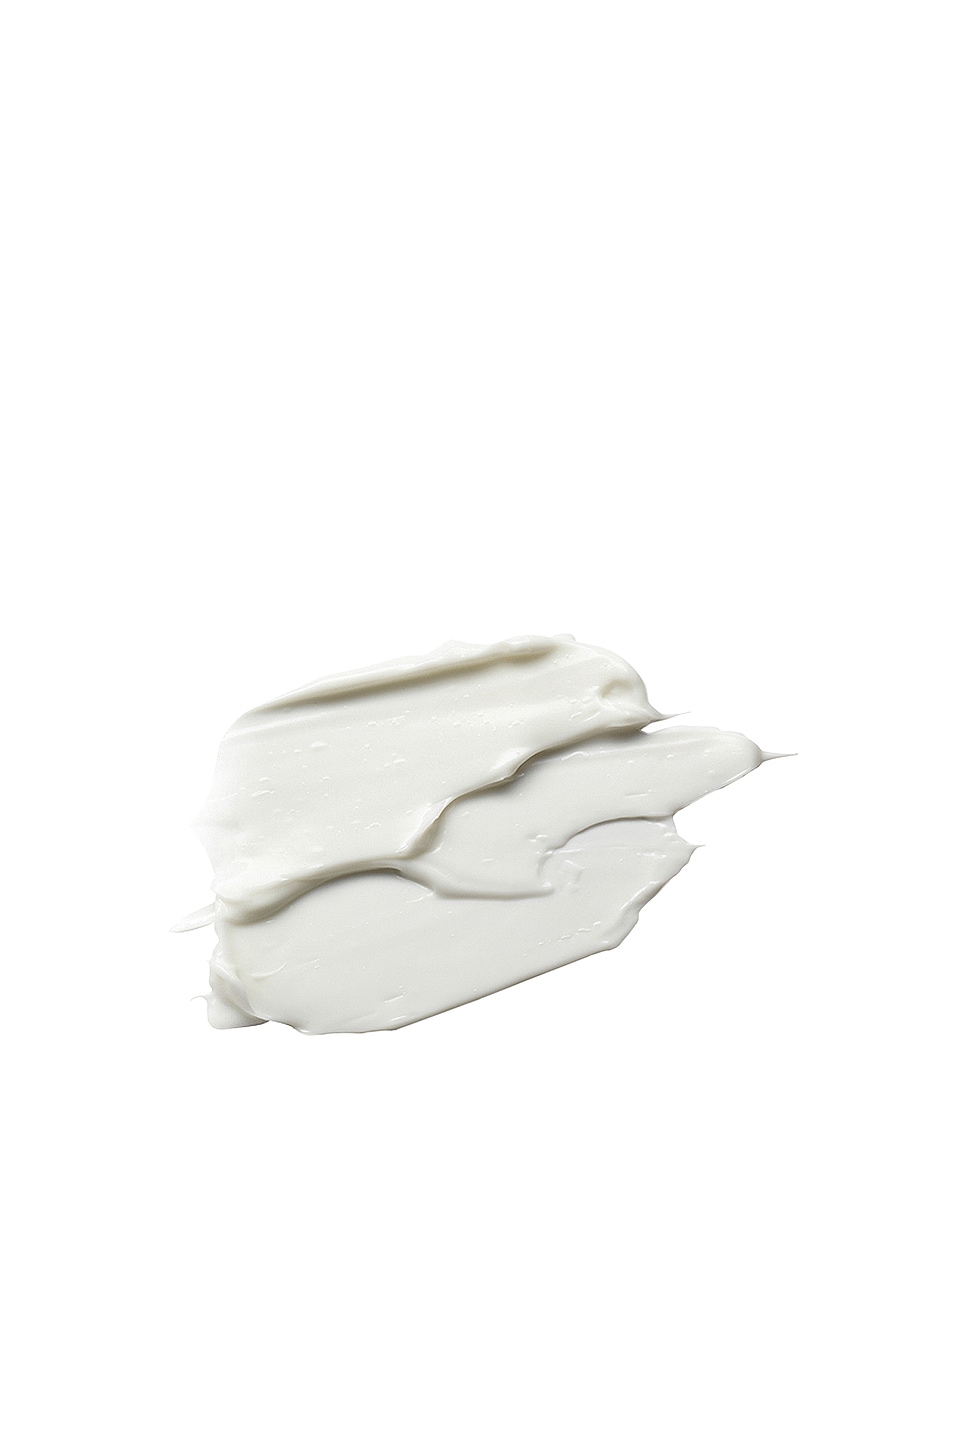 Shop Elemis Pro-collagen Marine Cream In N,a